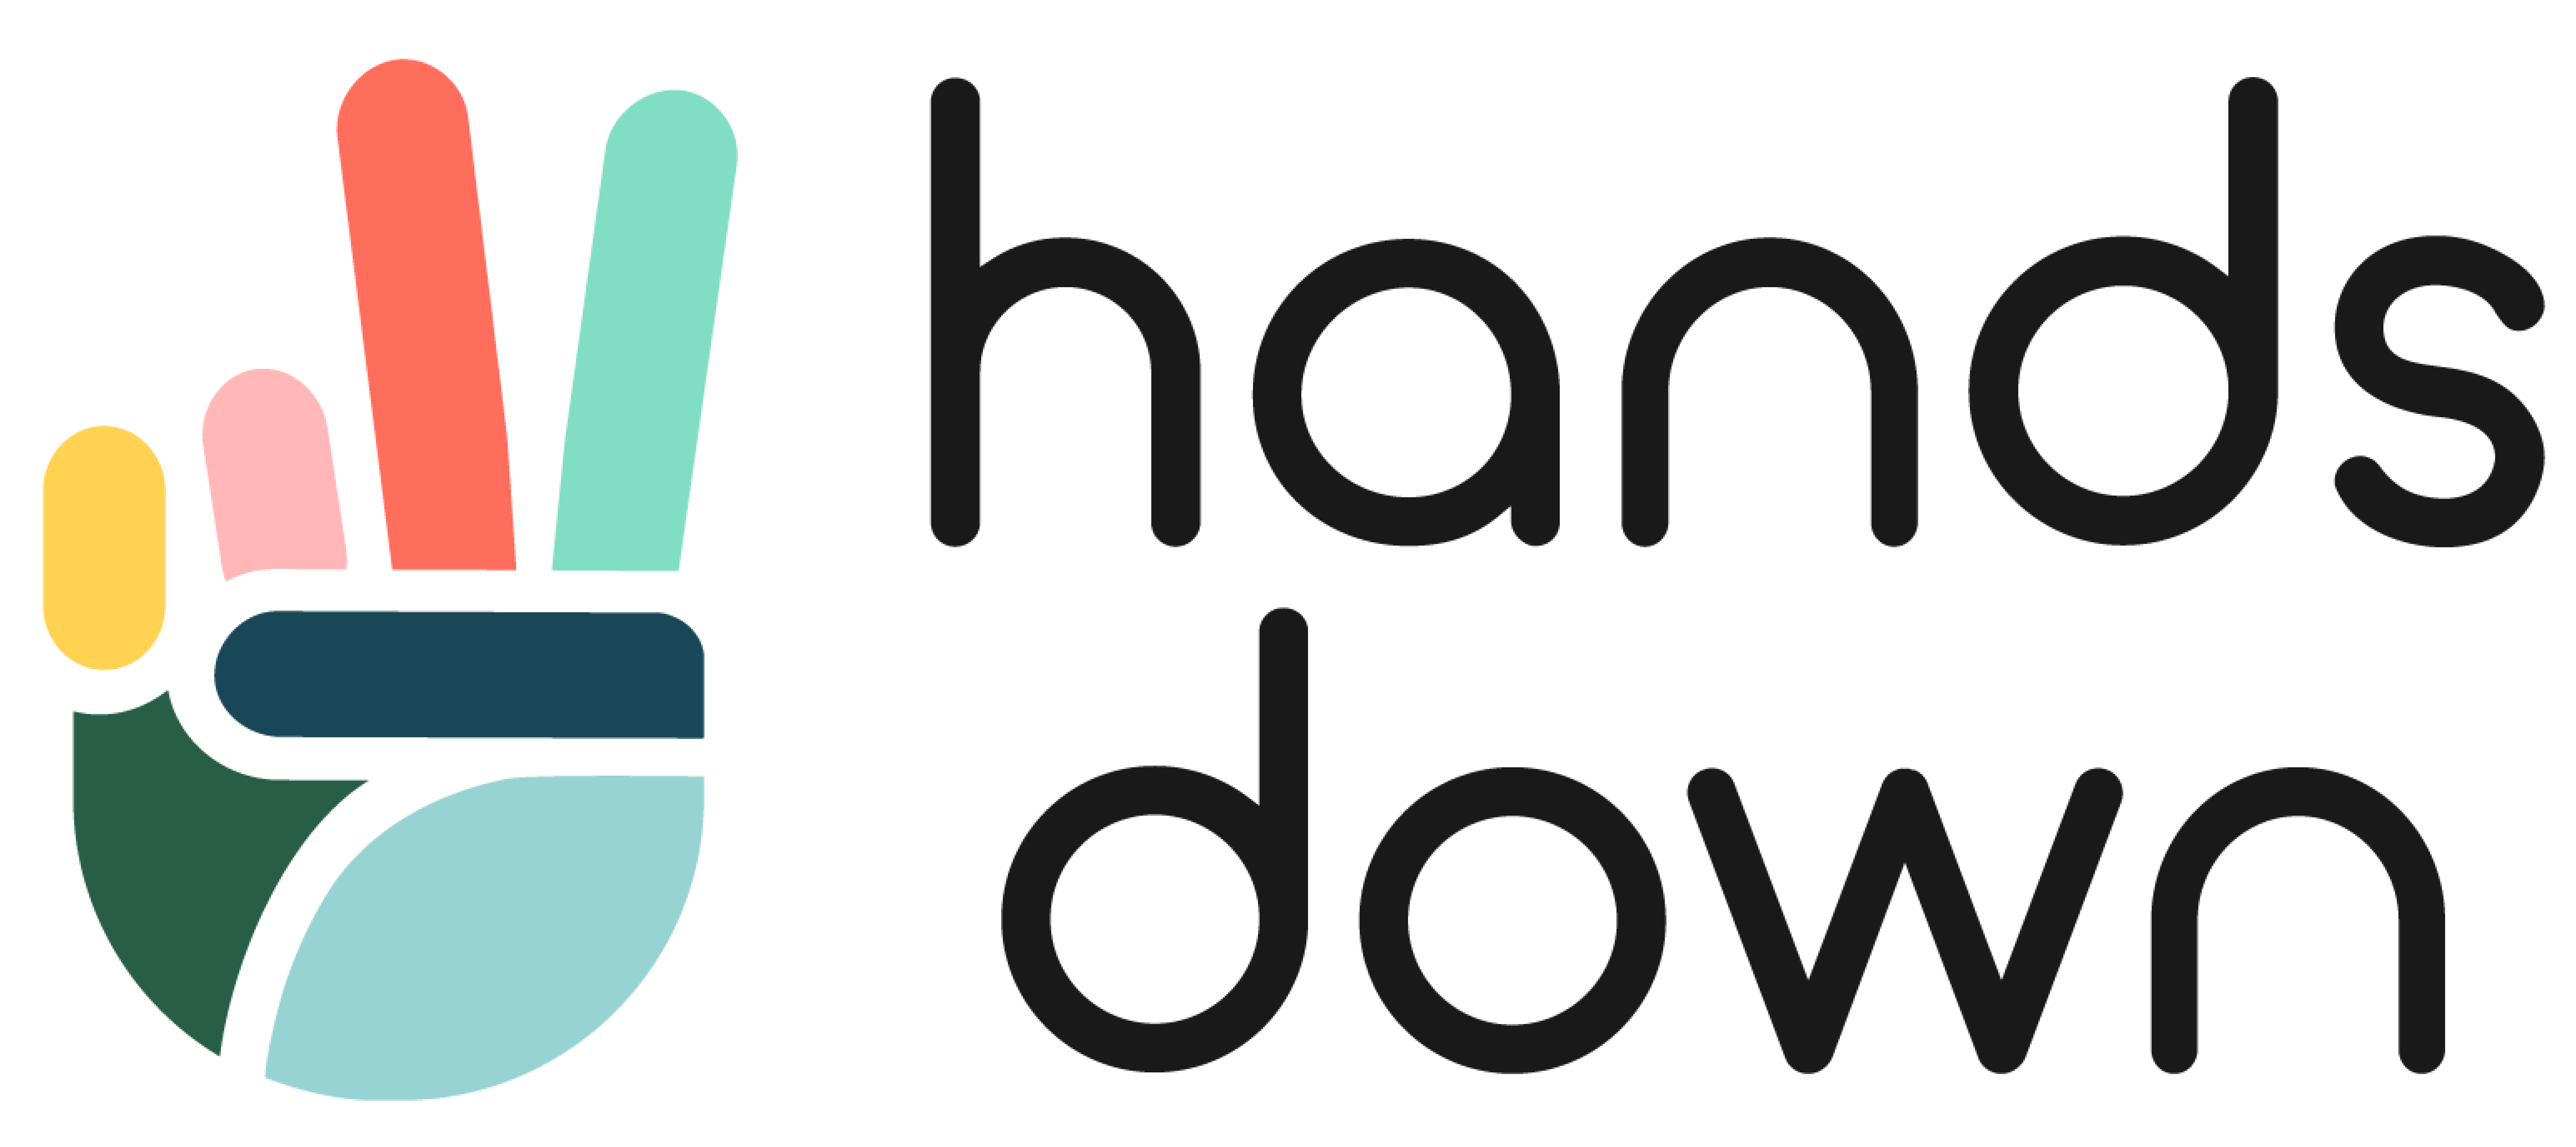 Handsdown.shop Logo